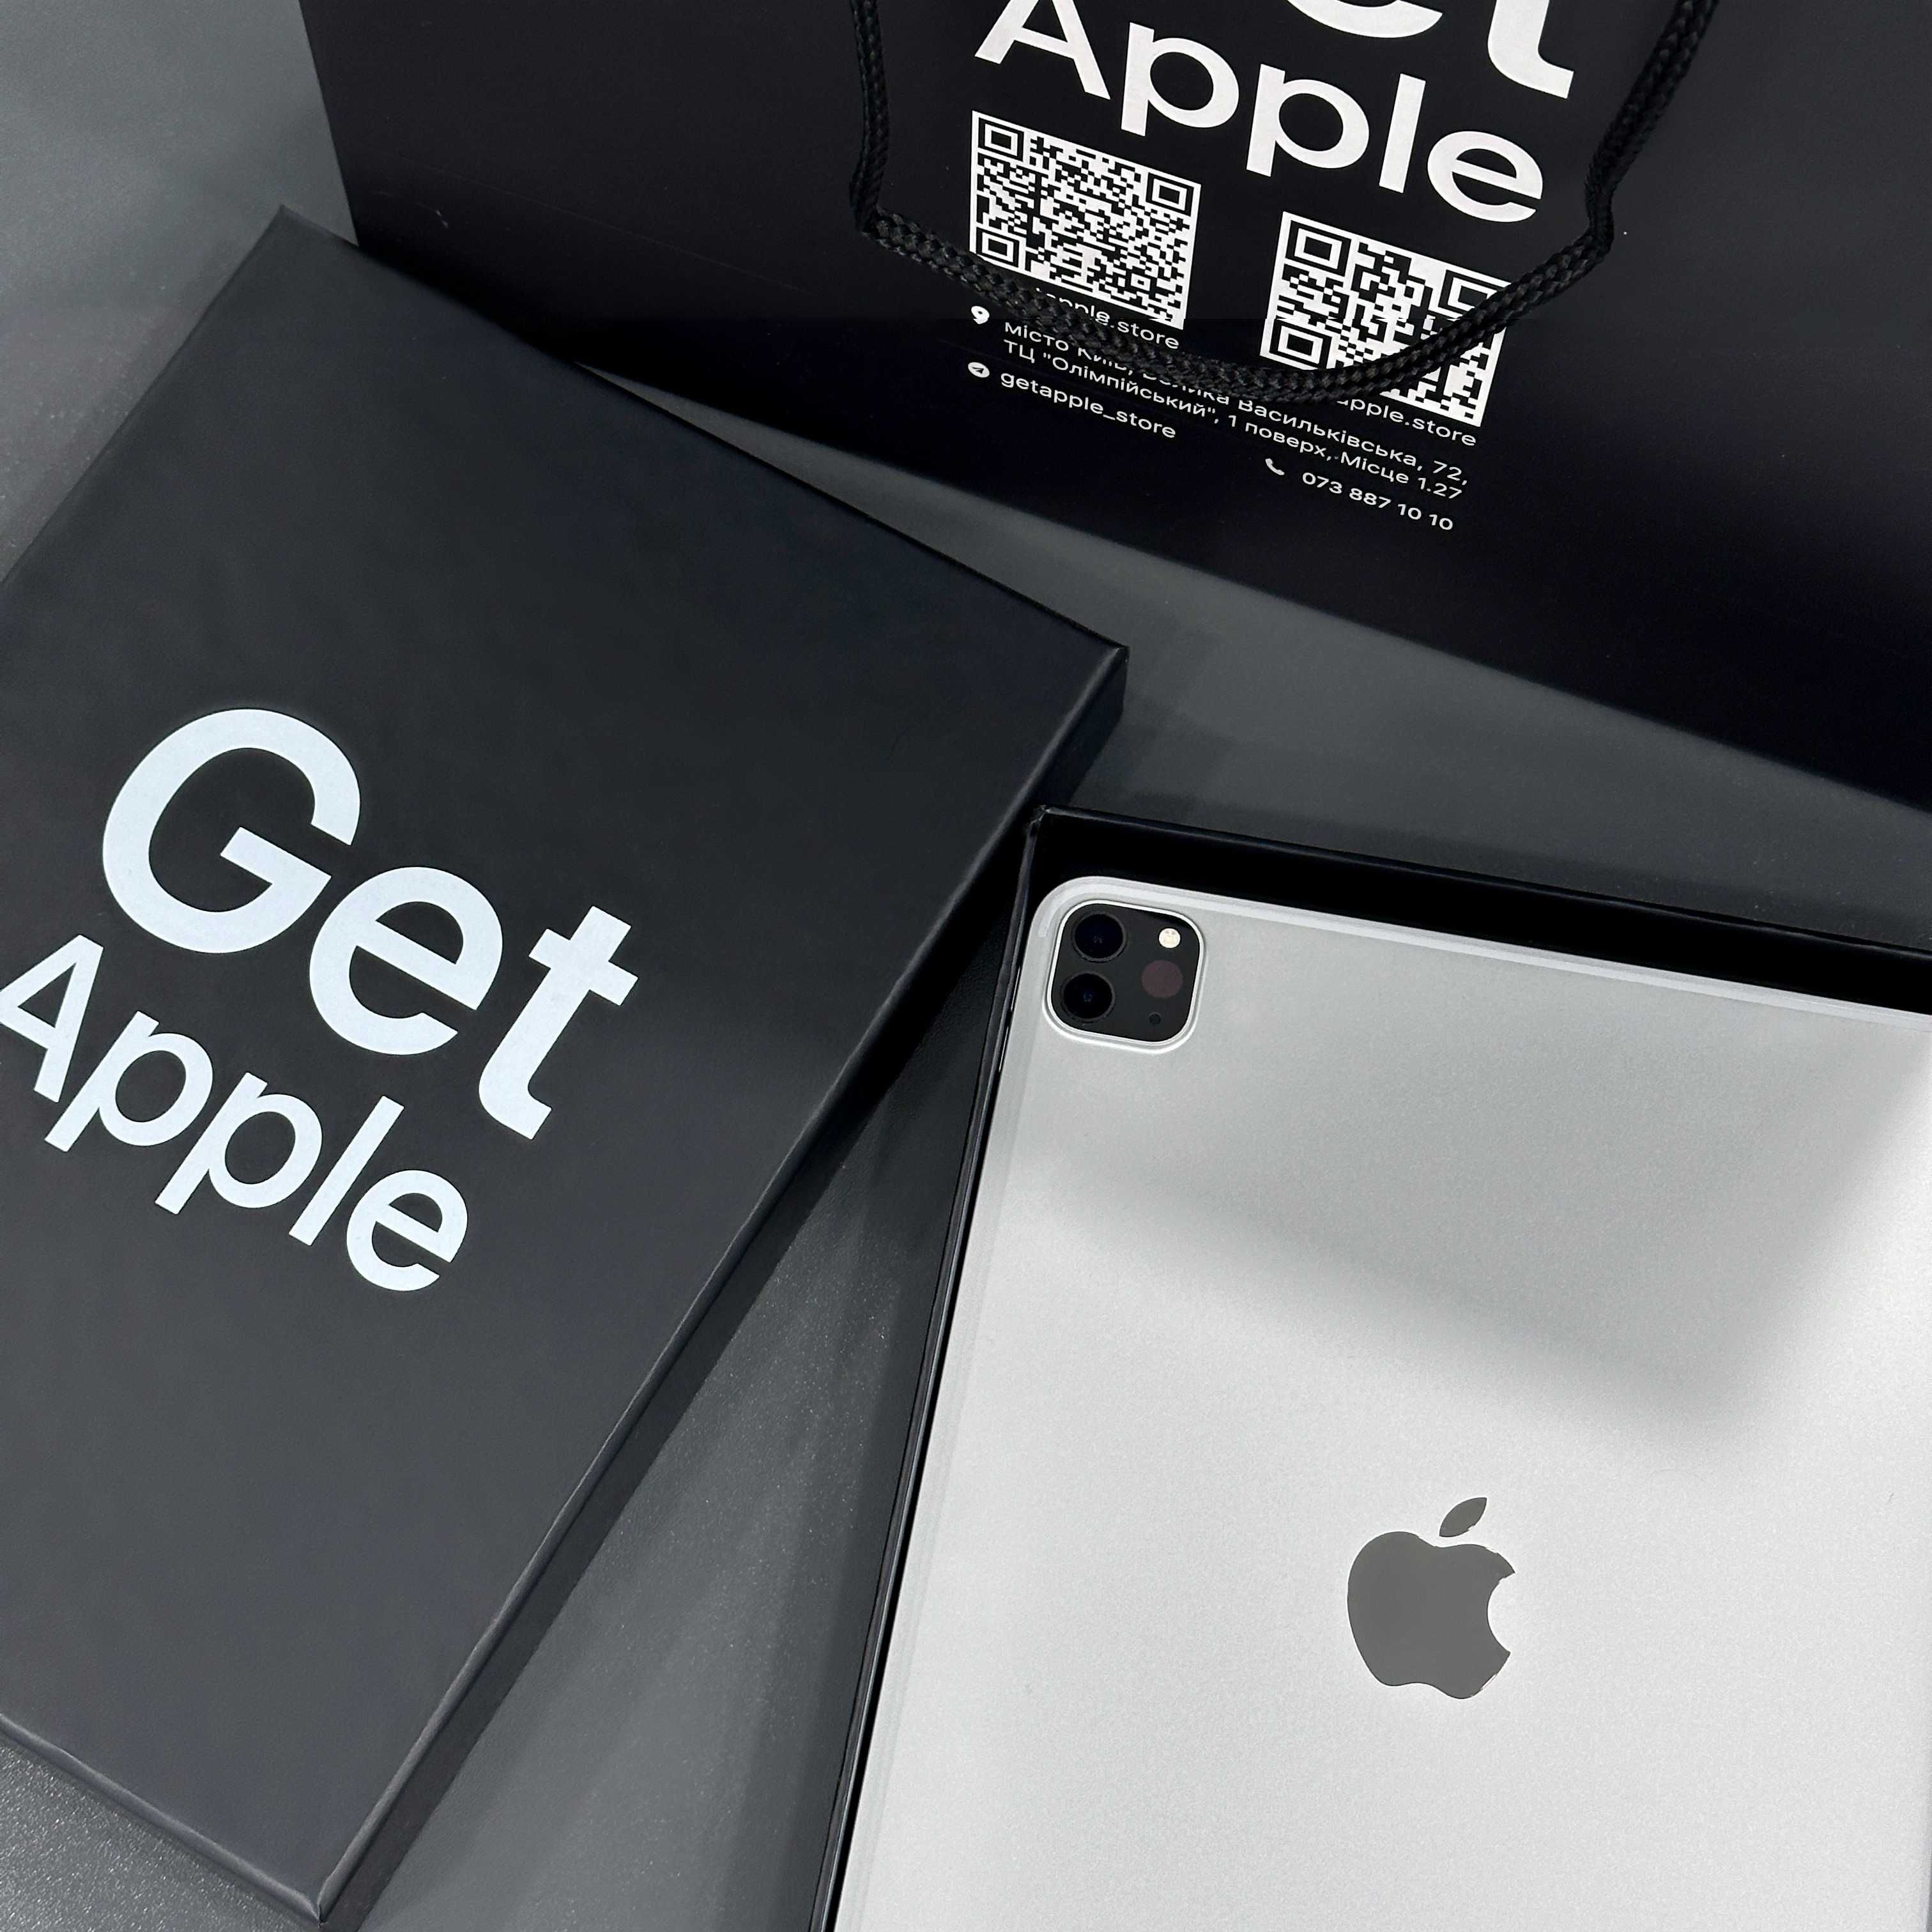 Apple iPad Air 3 10.5” 2019 64GB Wi-Fi Space Gray #2496